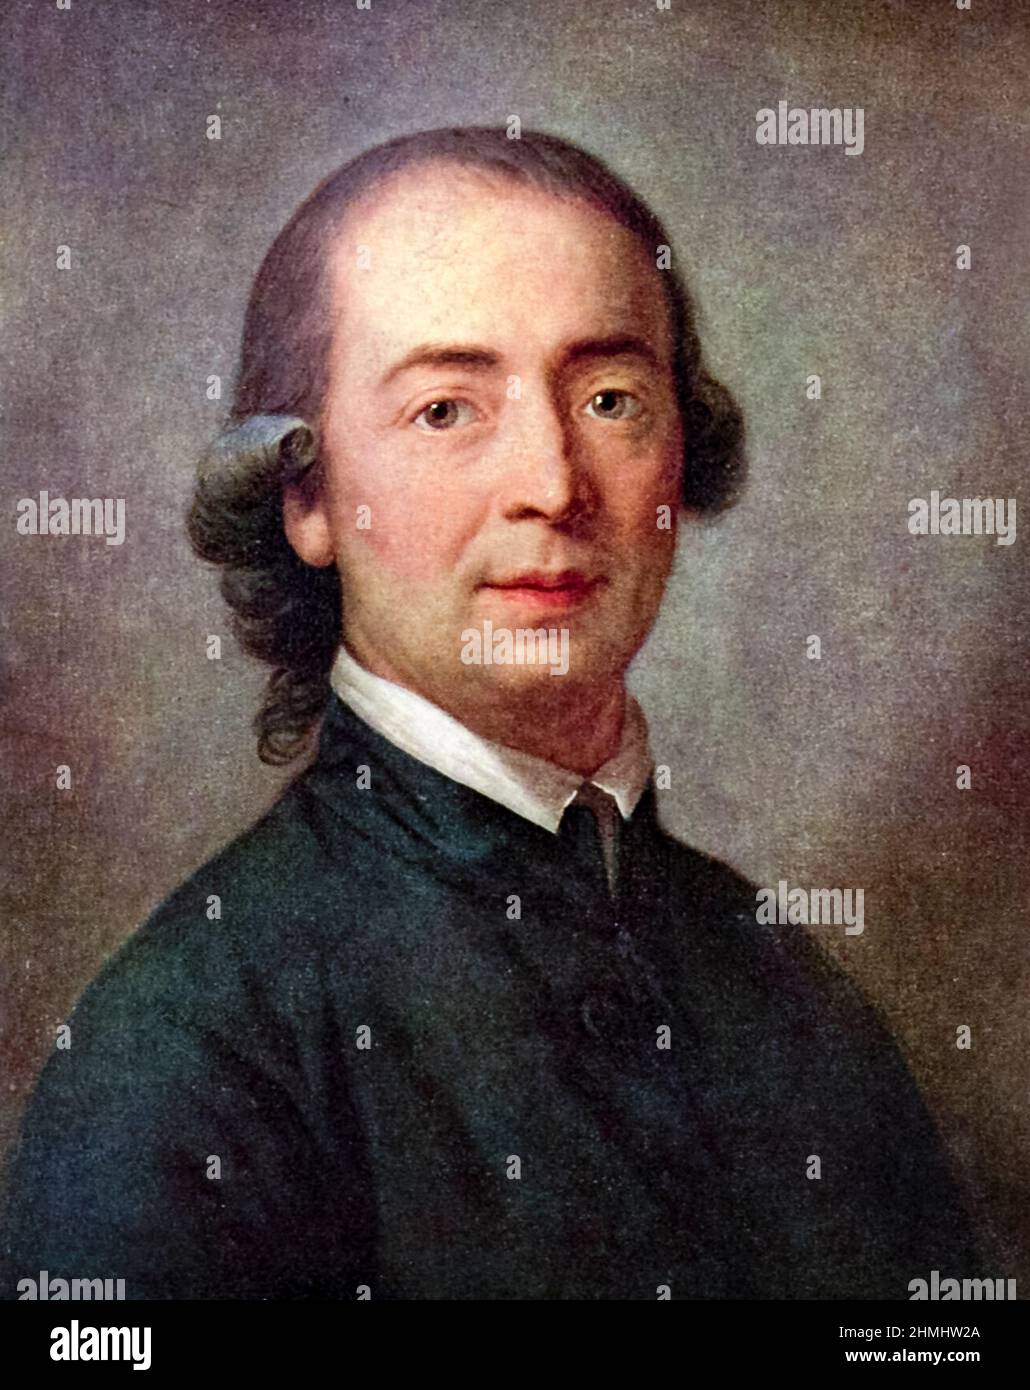 Johann Gottfried Herder (1744-1803) filósofo, teólogo, poeta y crítico literario alemán asociado con la Ilustración, Sturm und Drang, y el clasicismo de Weimar. Retrato de Anton Graff (1736-1813) pintado en 1785. Foto de stock